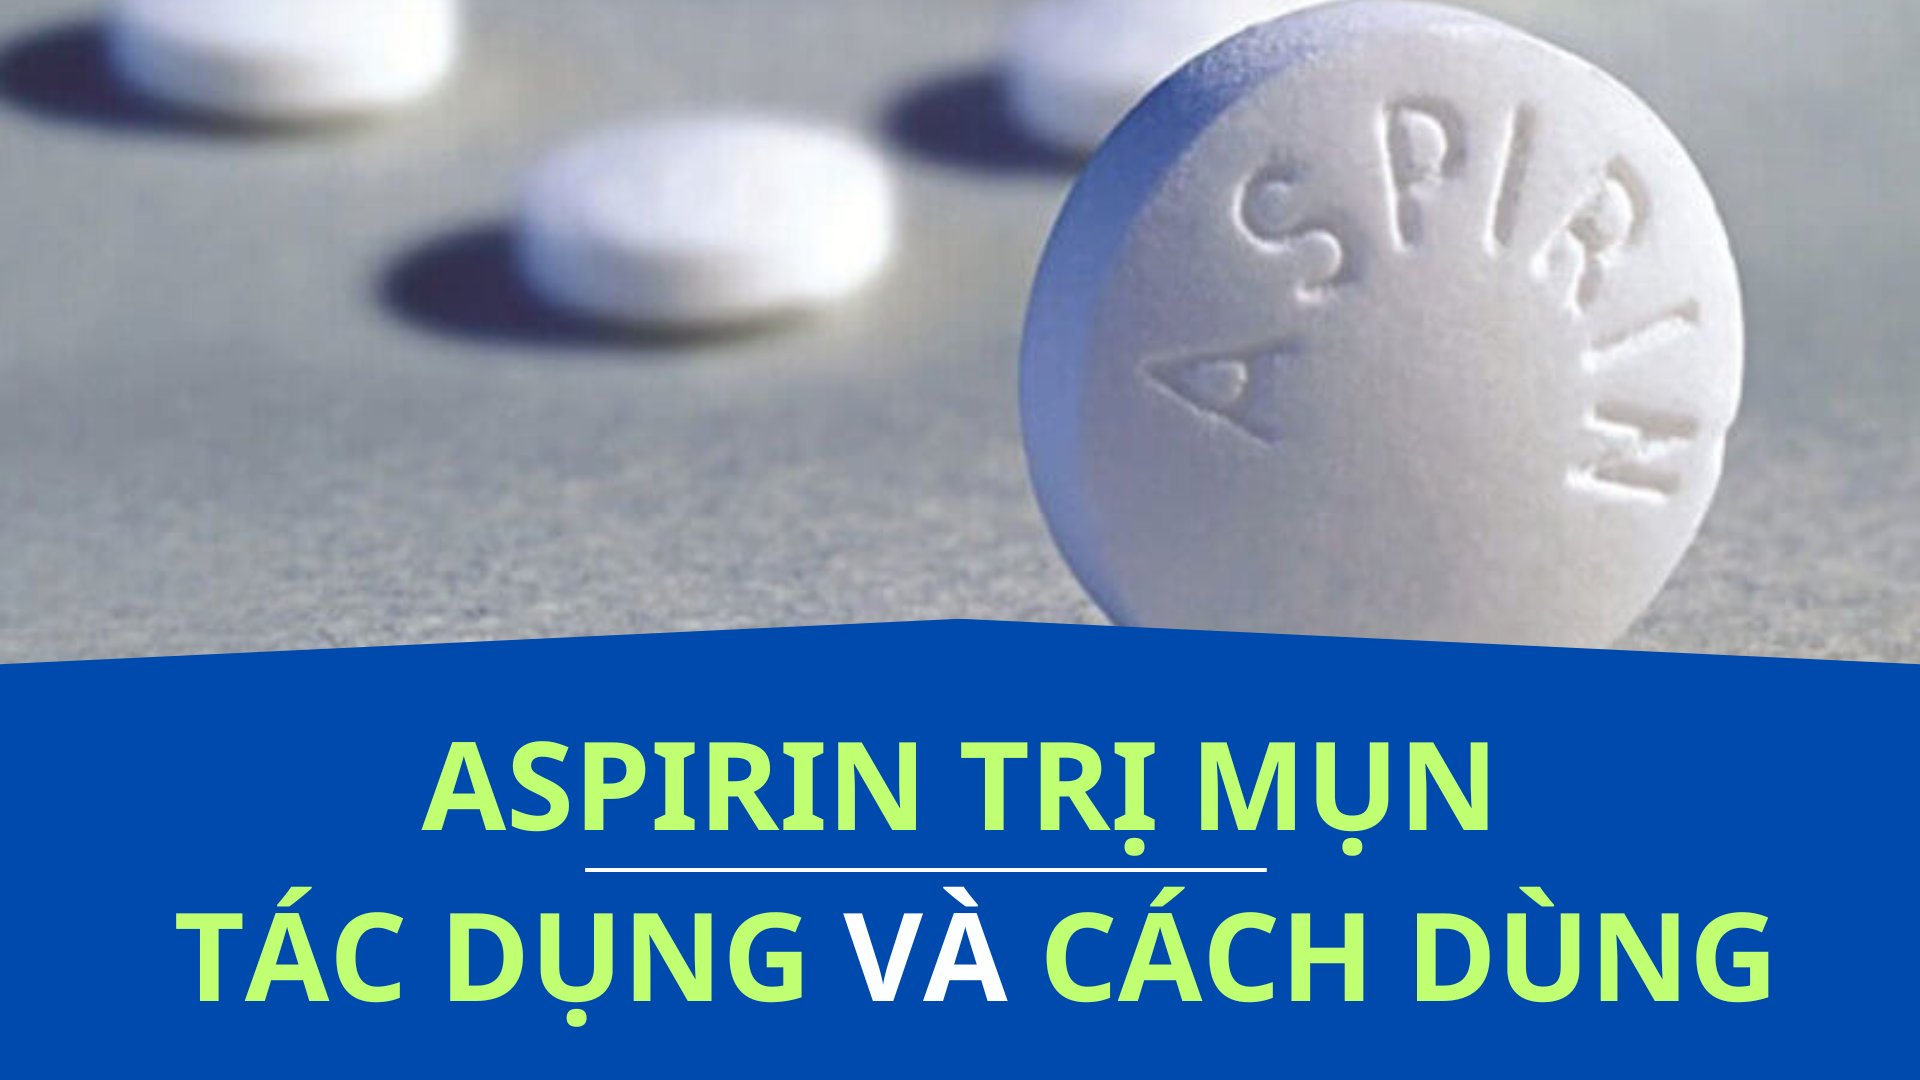 Aspirin được dùng để trị mụn nhờ chứa axit acetylsalicylic, giúp giảm viêm và làm khô mụn viêm. Tuy nhiên, chưa có bằng chứng khoa học rõ ràng về hiệu quả này. Cách dùng phổ biến là nghiền aspirin, pha với nước, thoa lên mụn trong 15 phút rồi rửa sạch.